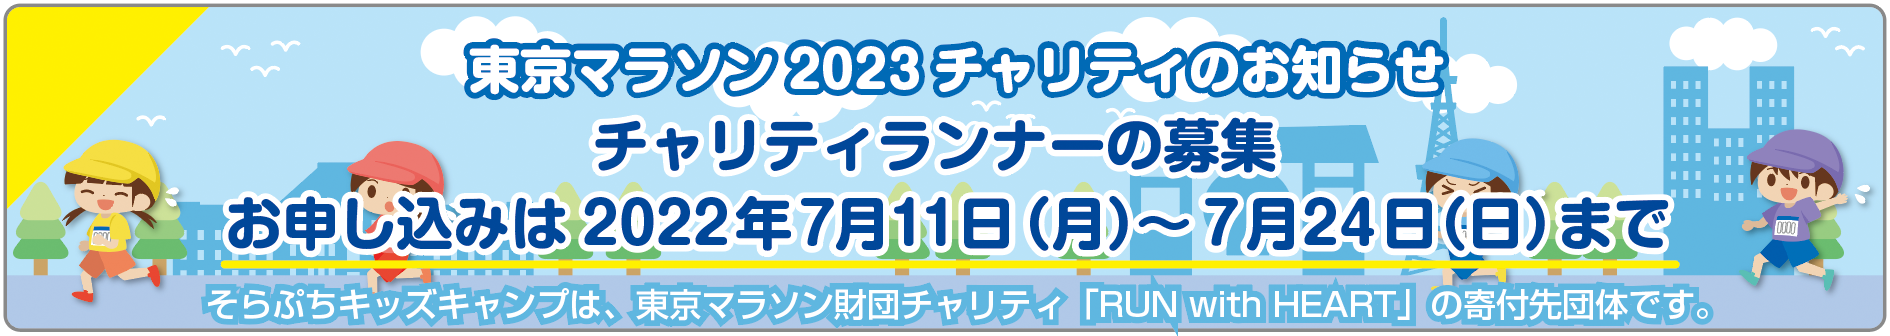 東京マラソン2023チャリティのお知らせ・チャリティランナーの募集